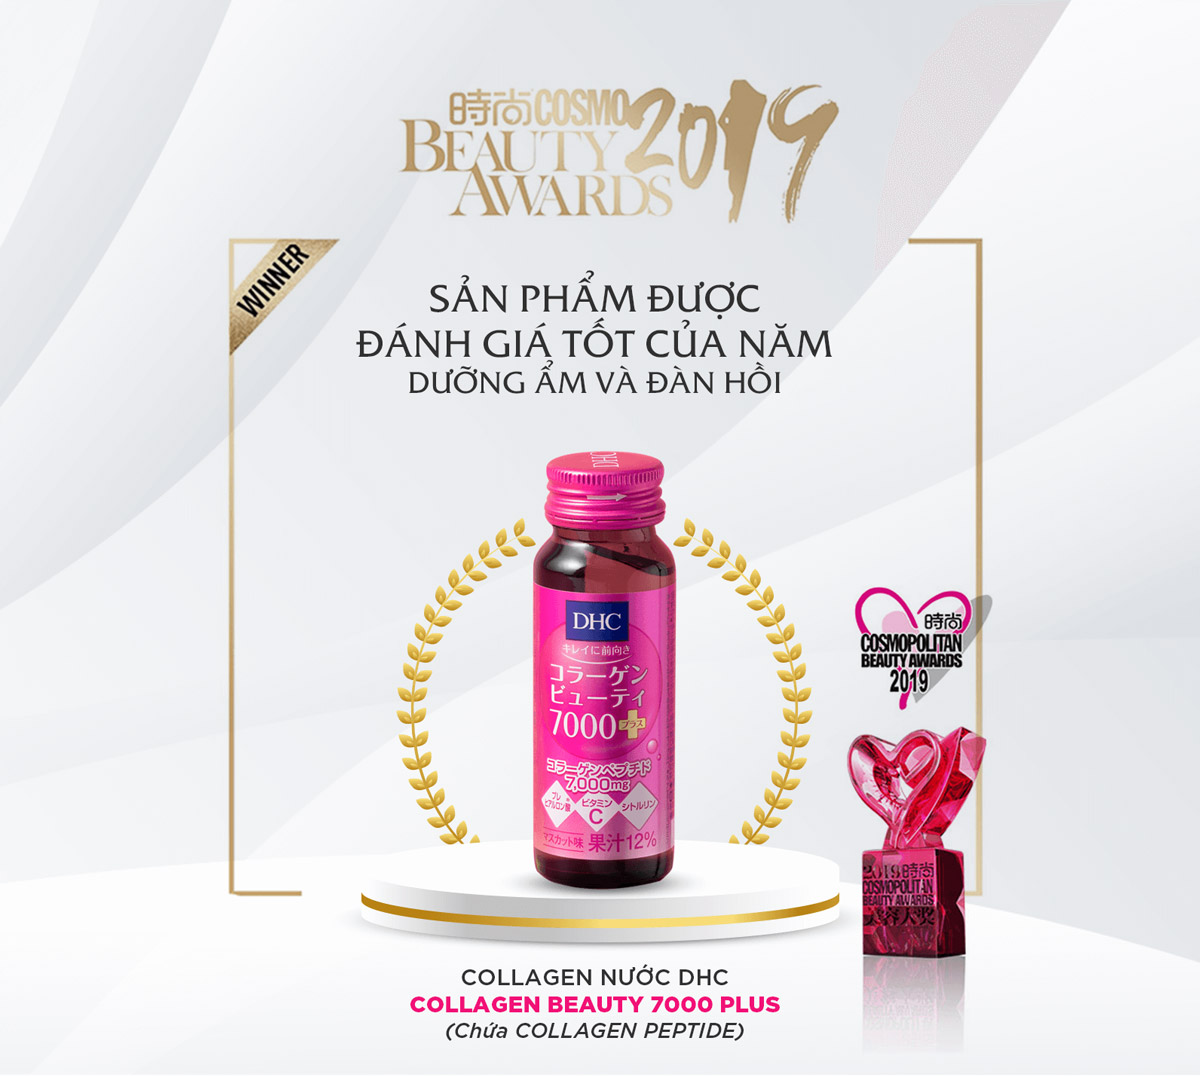 Collagen Nước DHC Beauty 7000 Plus được tạp chí Cosmopolitan bình chọn giải Beauty Awards năm 2019.